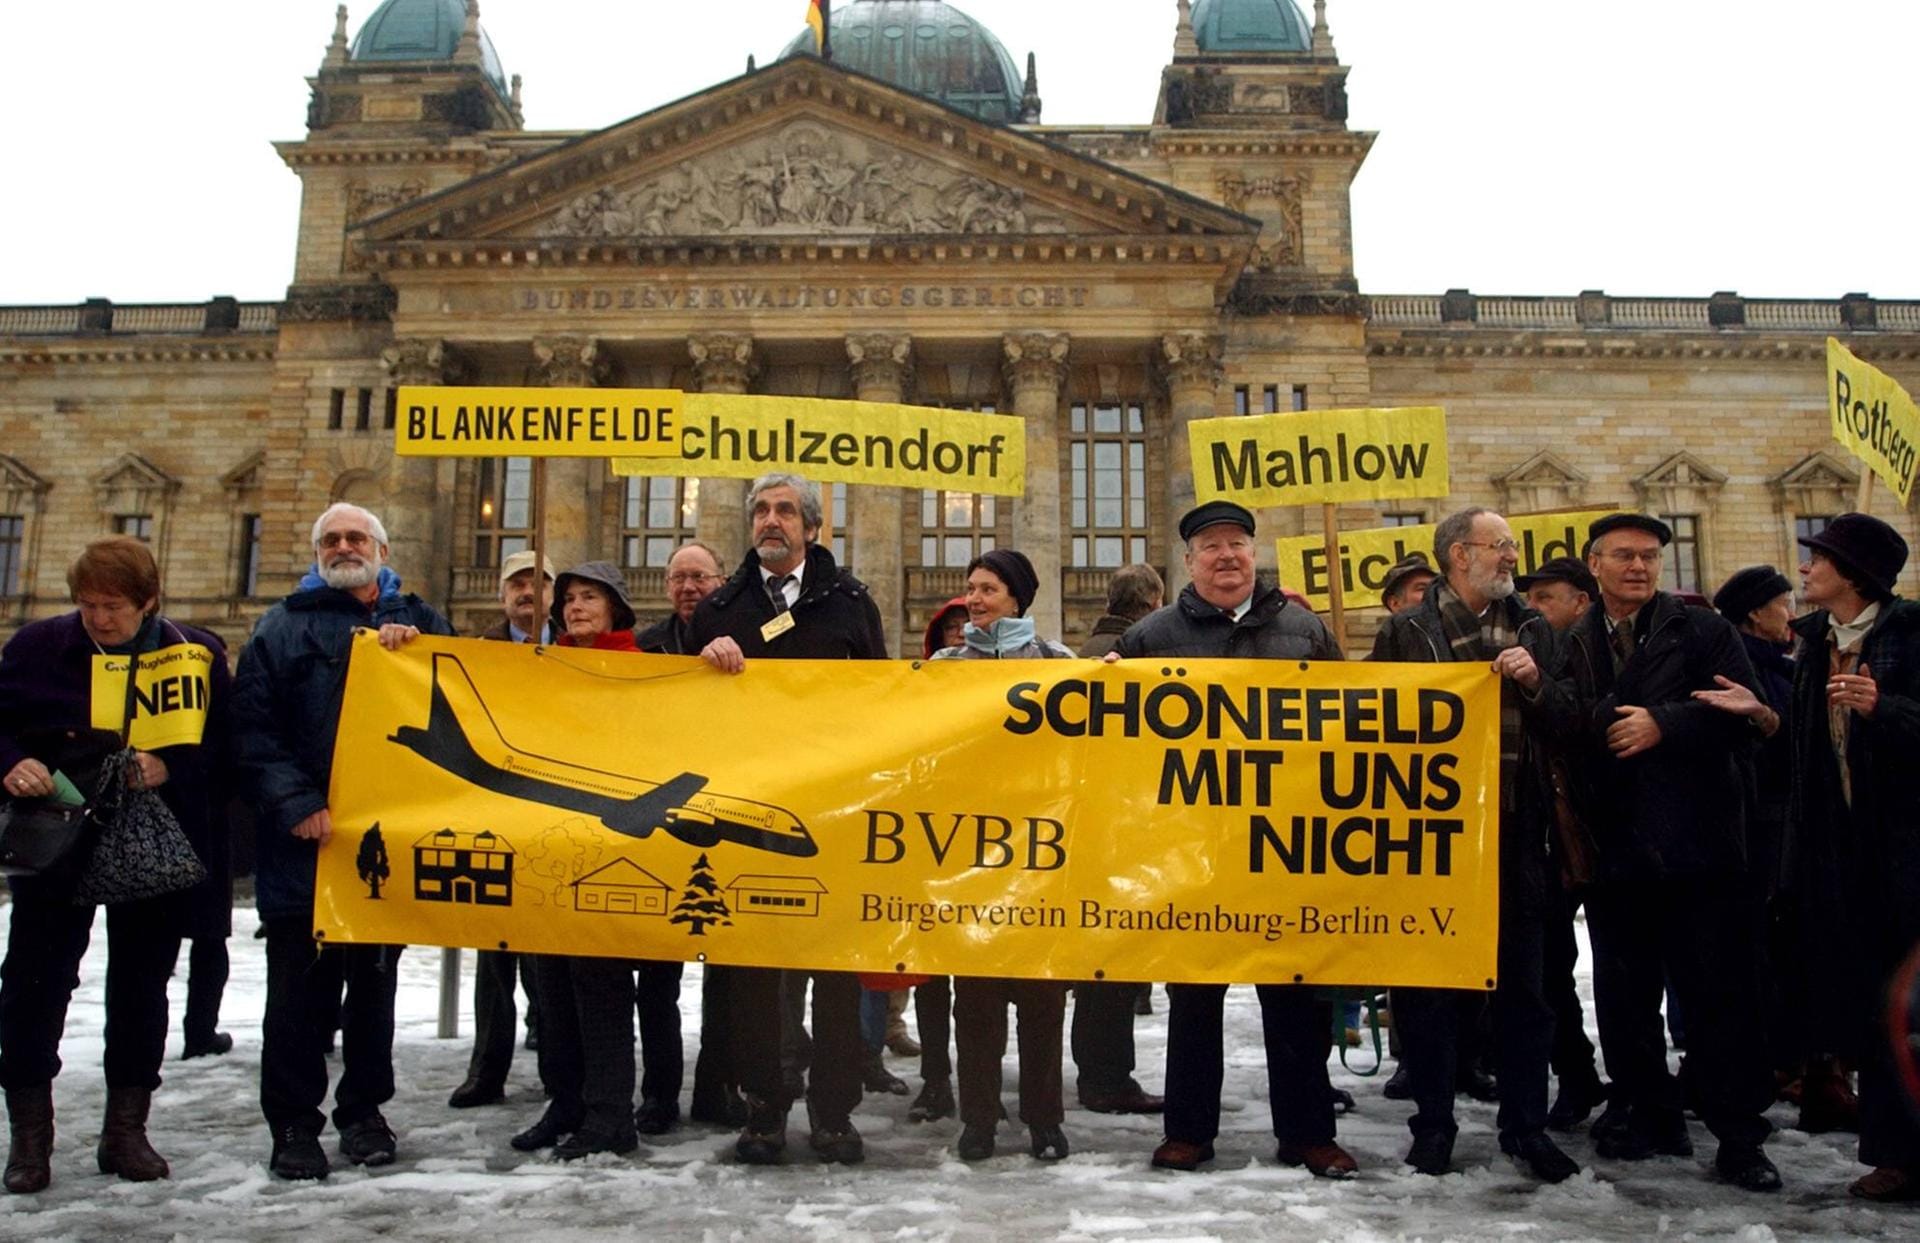 Widerstand gegen den neuen Großflughafen gab es schon vor dem ersten Spatenstich, unter anderem wegen befürchtetem Fluglärm. Hier demonstrieren Bewohner mehrerer Ortschaften südlich von Berlin im Februar 2006 vor dem Reichstag.